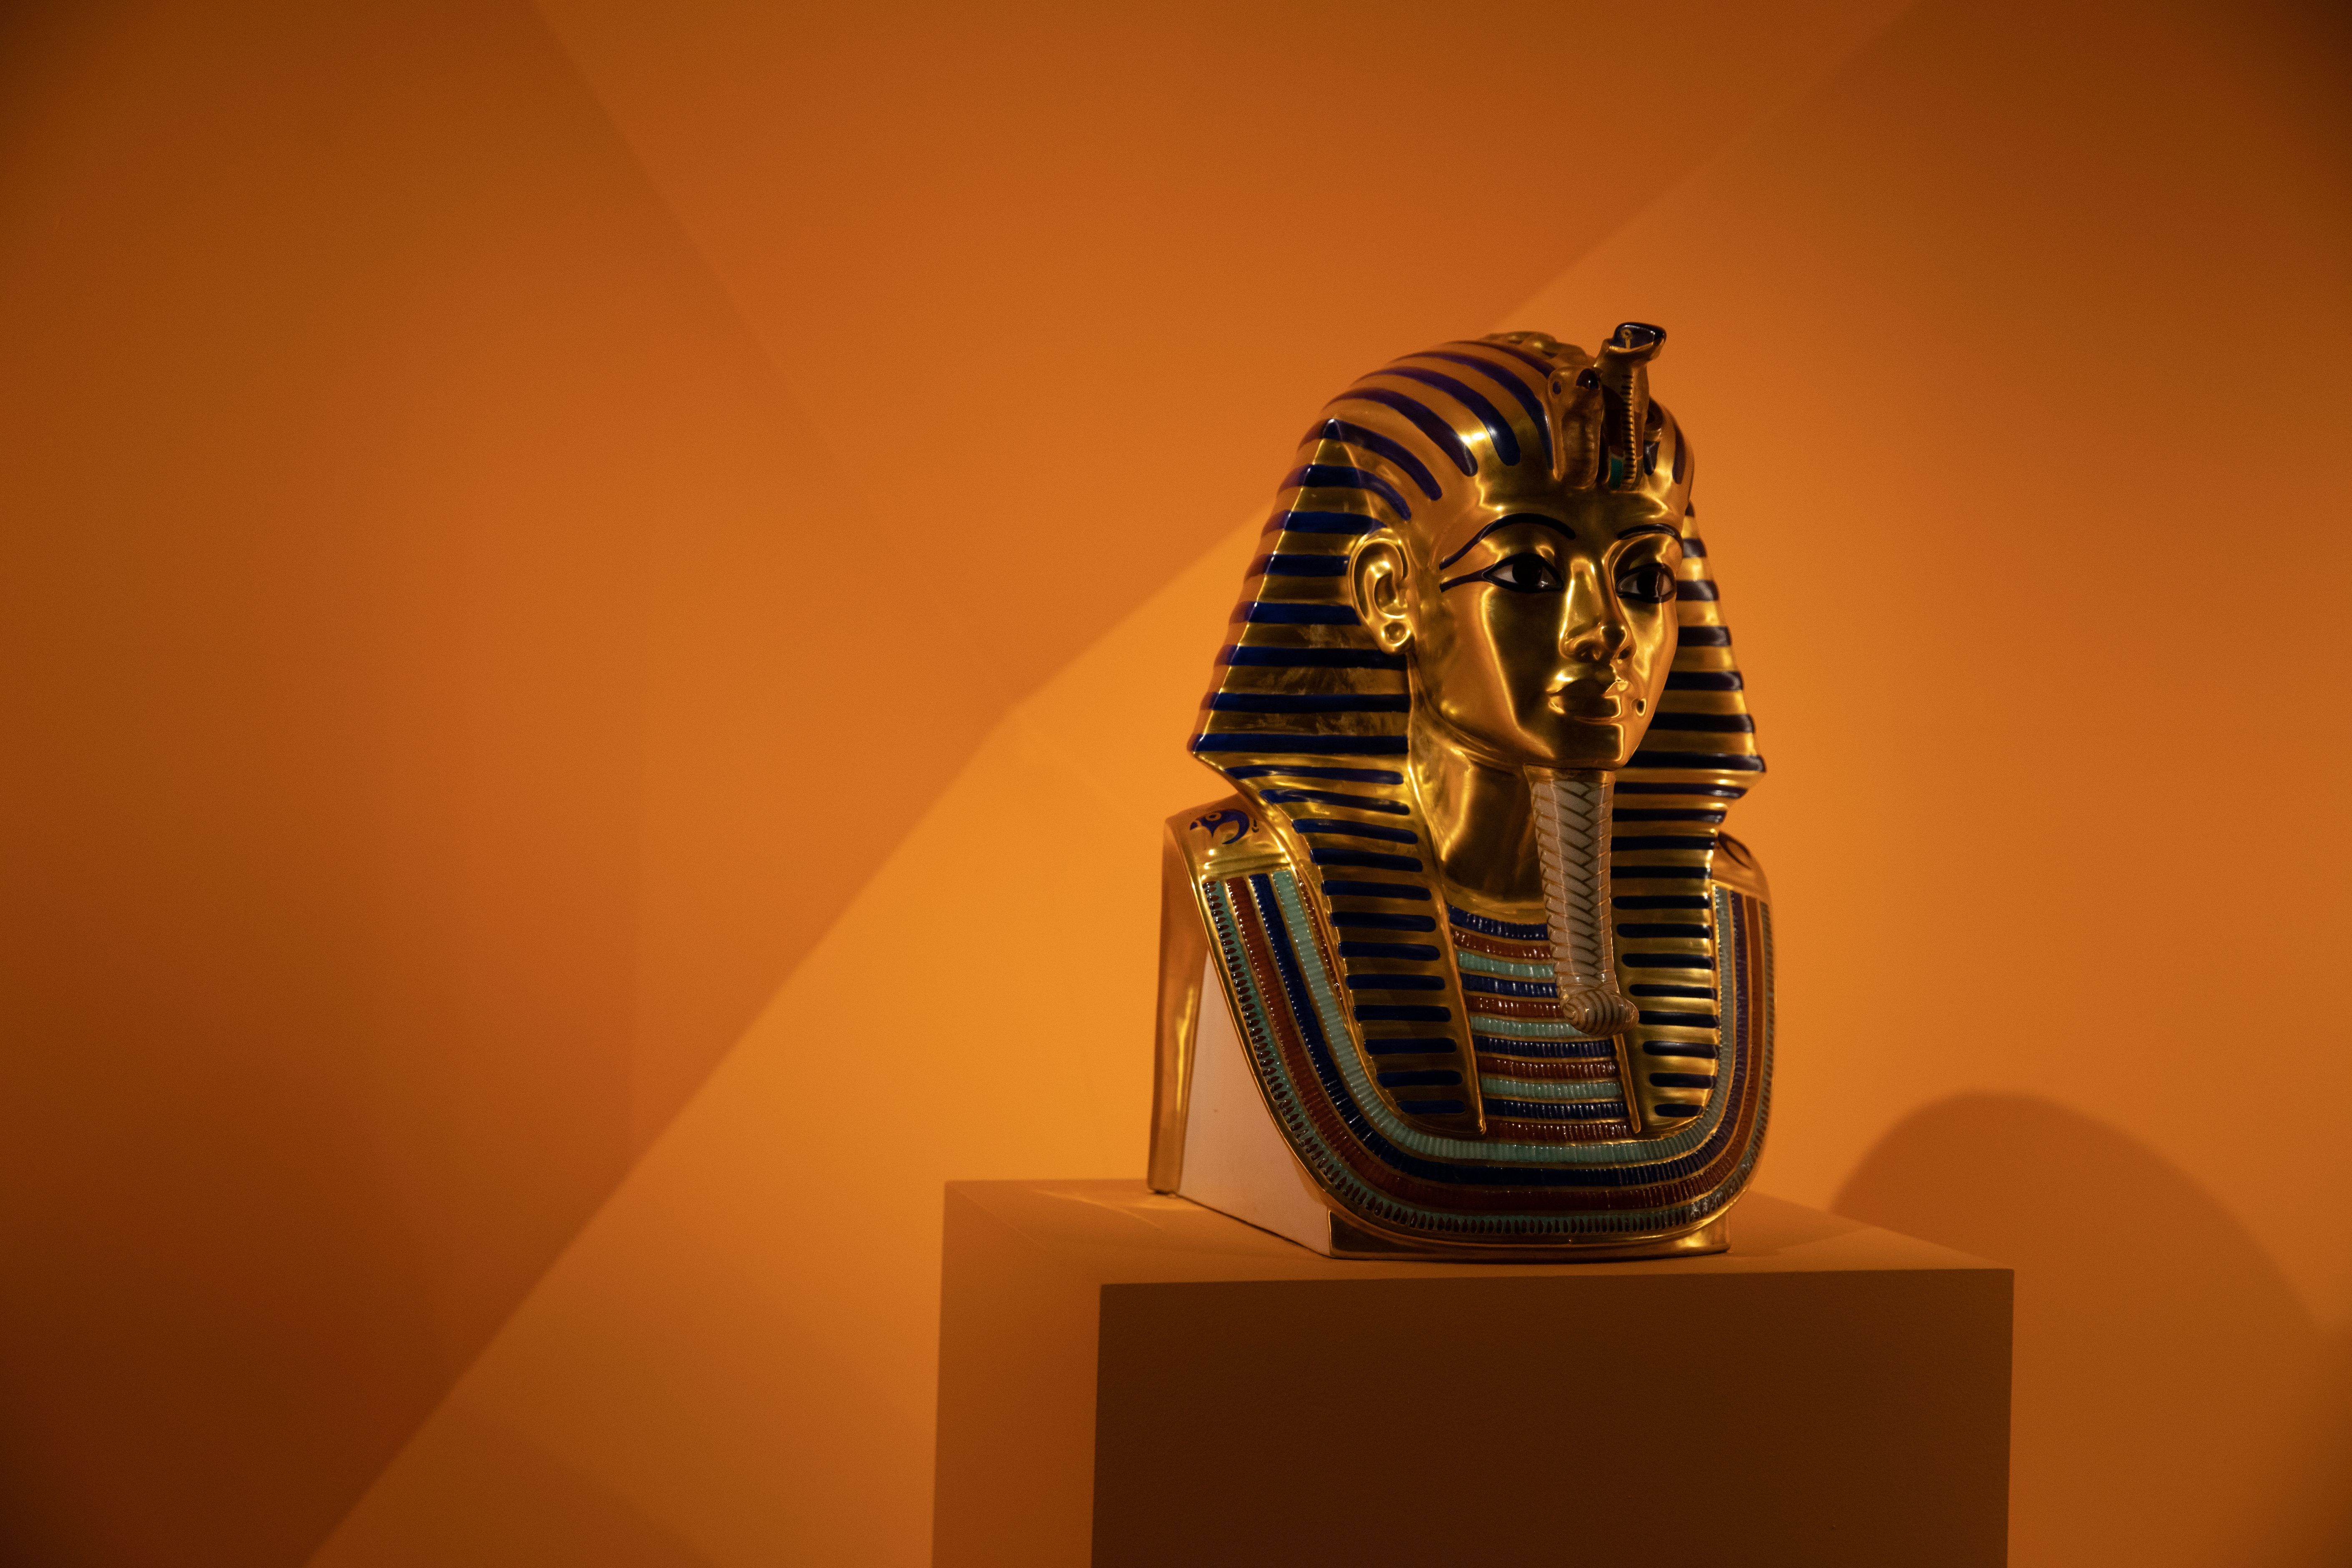 Cleópatra: saiba as curiosidades da rainha do Egito